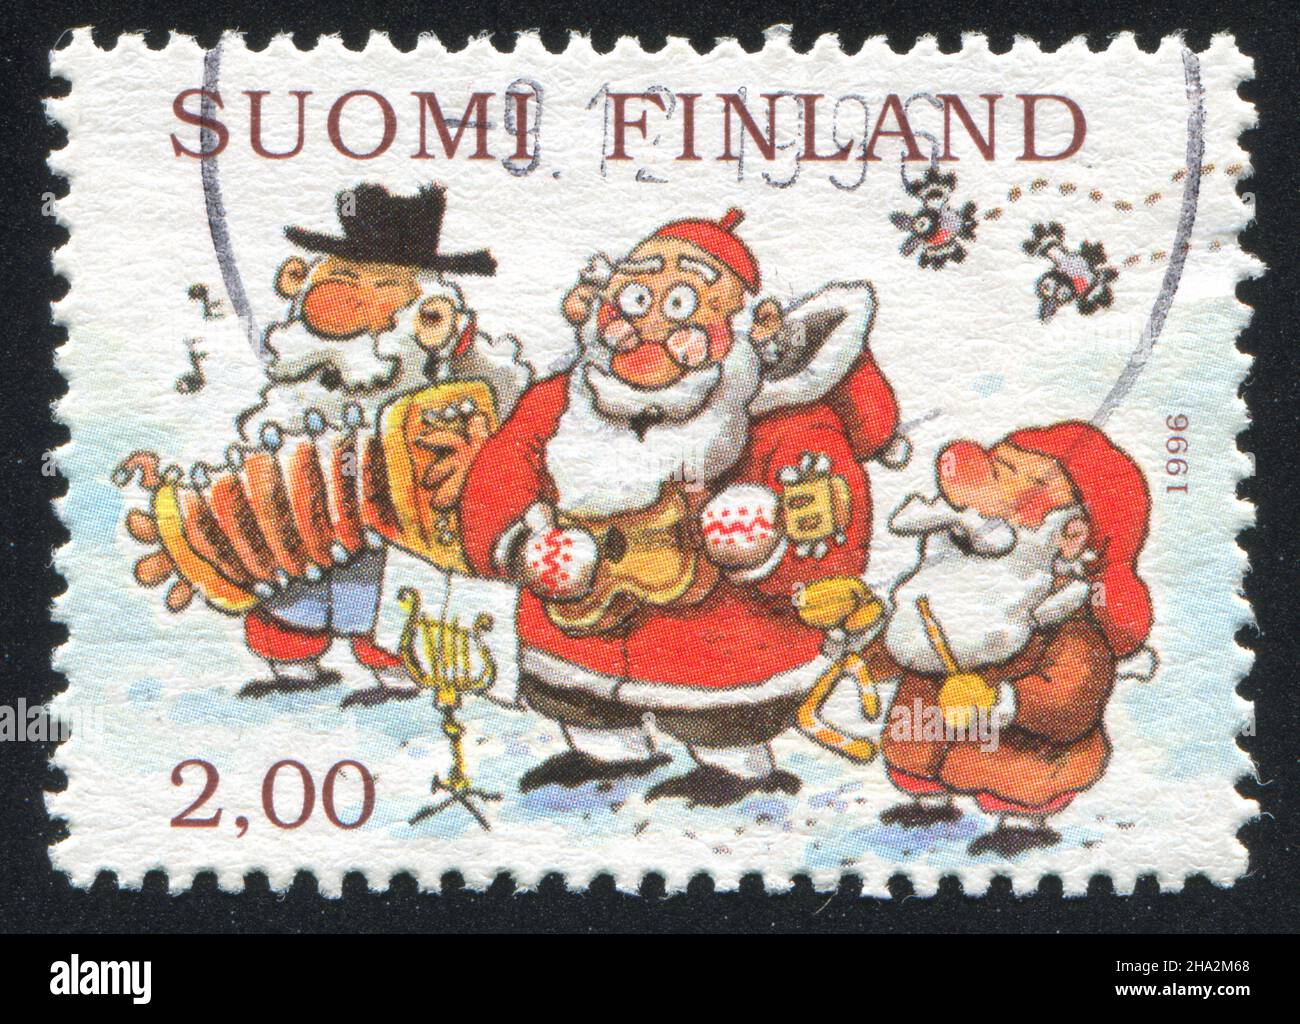 FINLANDE - VERS 1996: Timbre imprimé par la Finlande, montre Snowman, Santa et Gnome jouant des instruments de musique, vers 1996 Banque D'Images